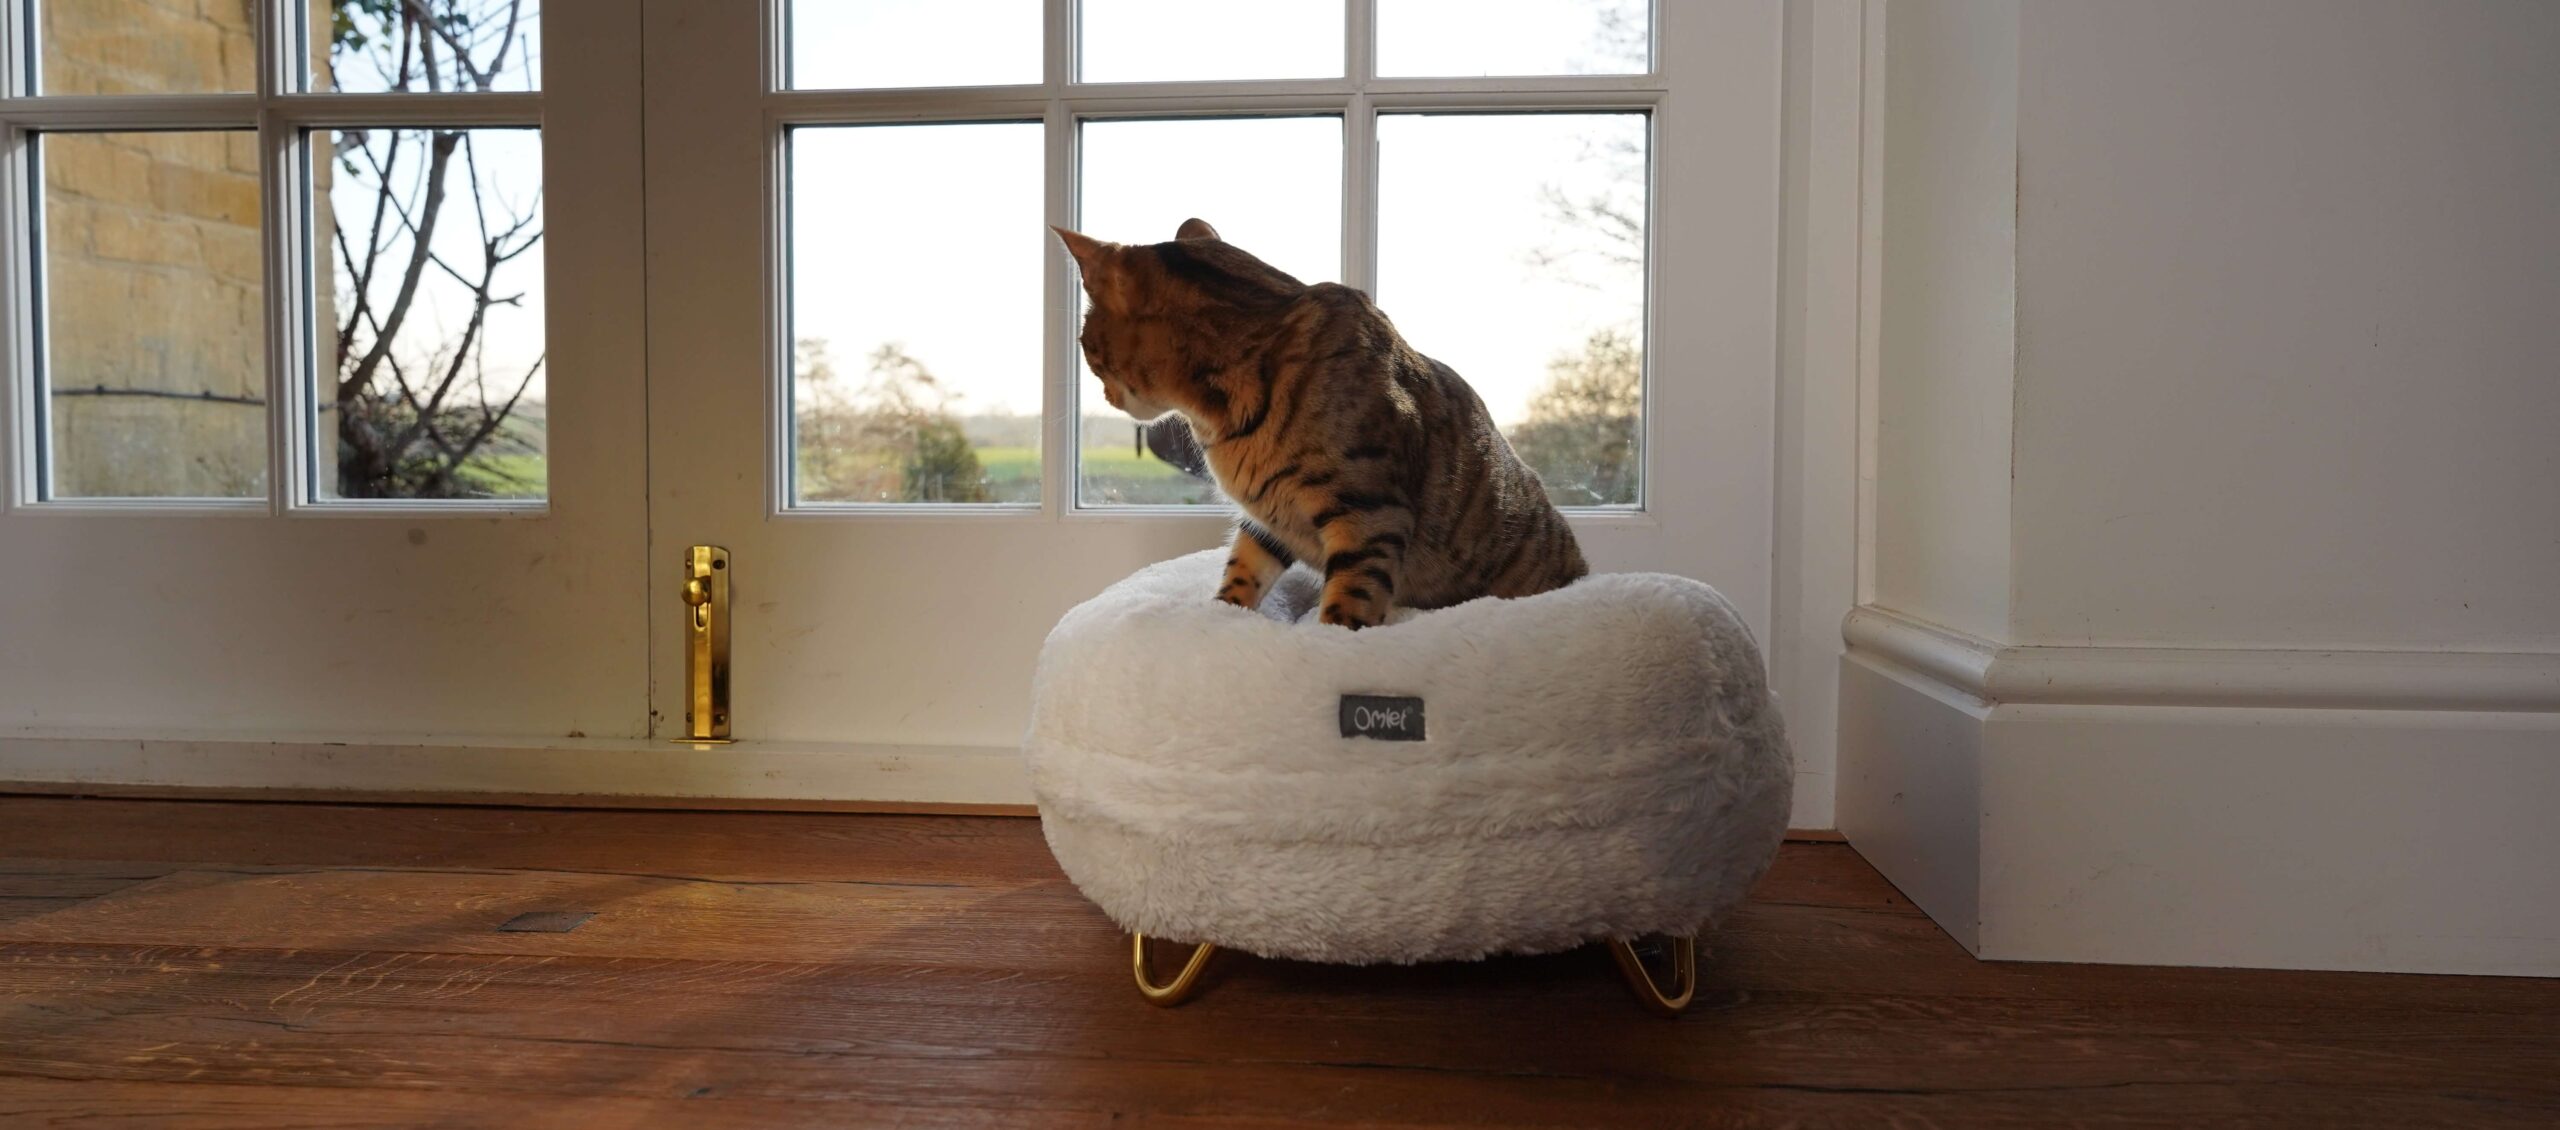 Kat zit op een witte maya donut kattenmand en kijkt door het raam naar buiten